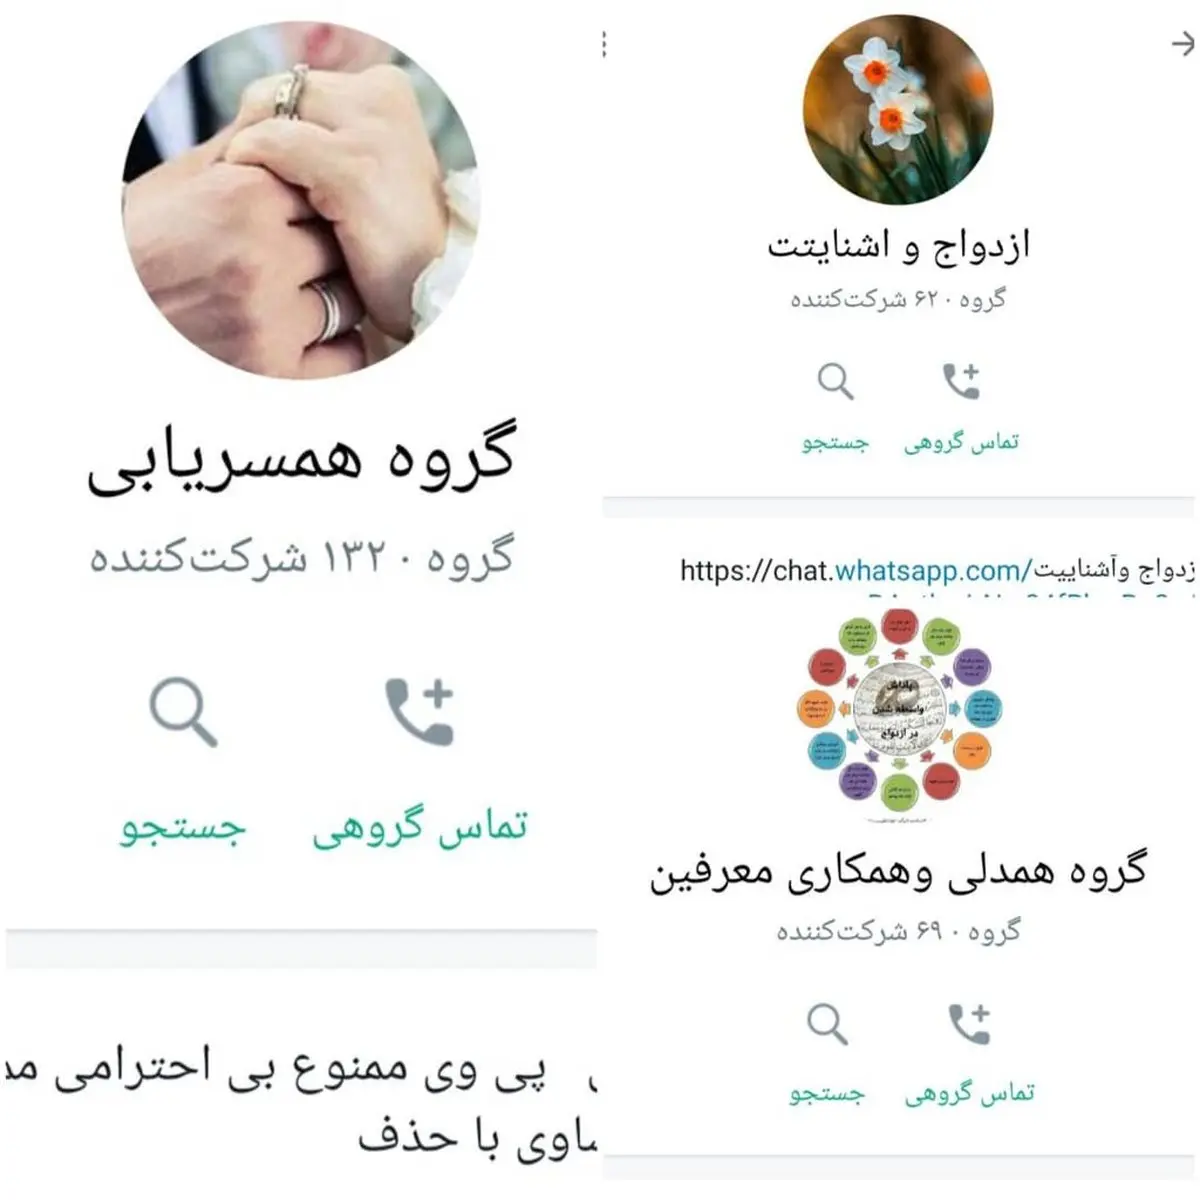 یک روش عجیب در ایران برای گرفتن خواستگار لاکچری